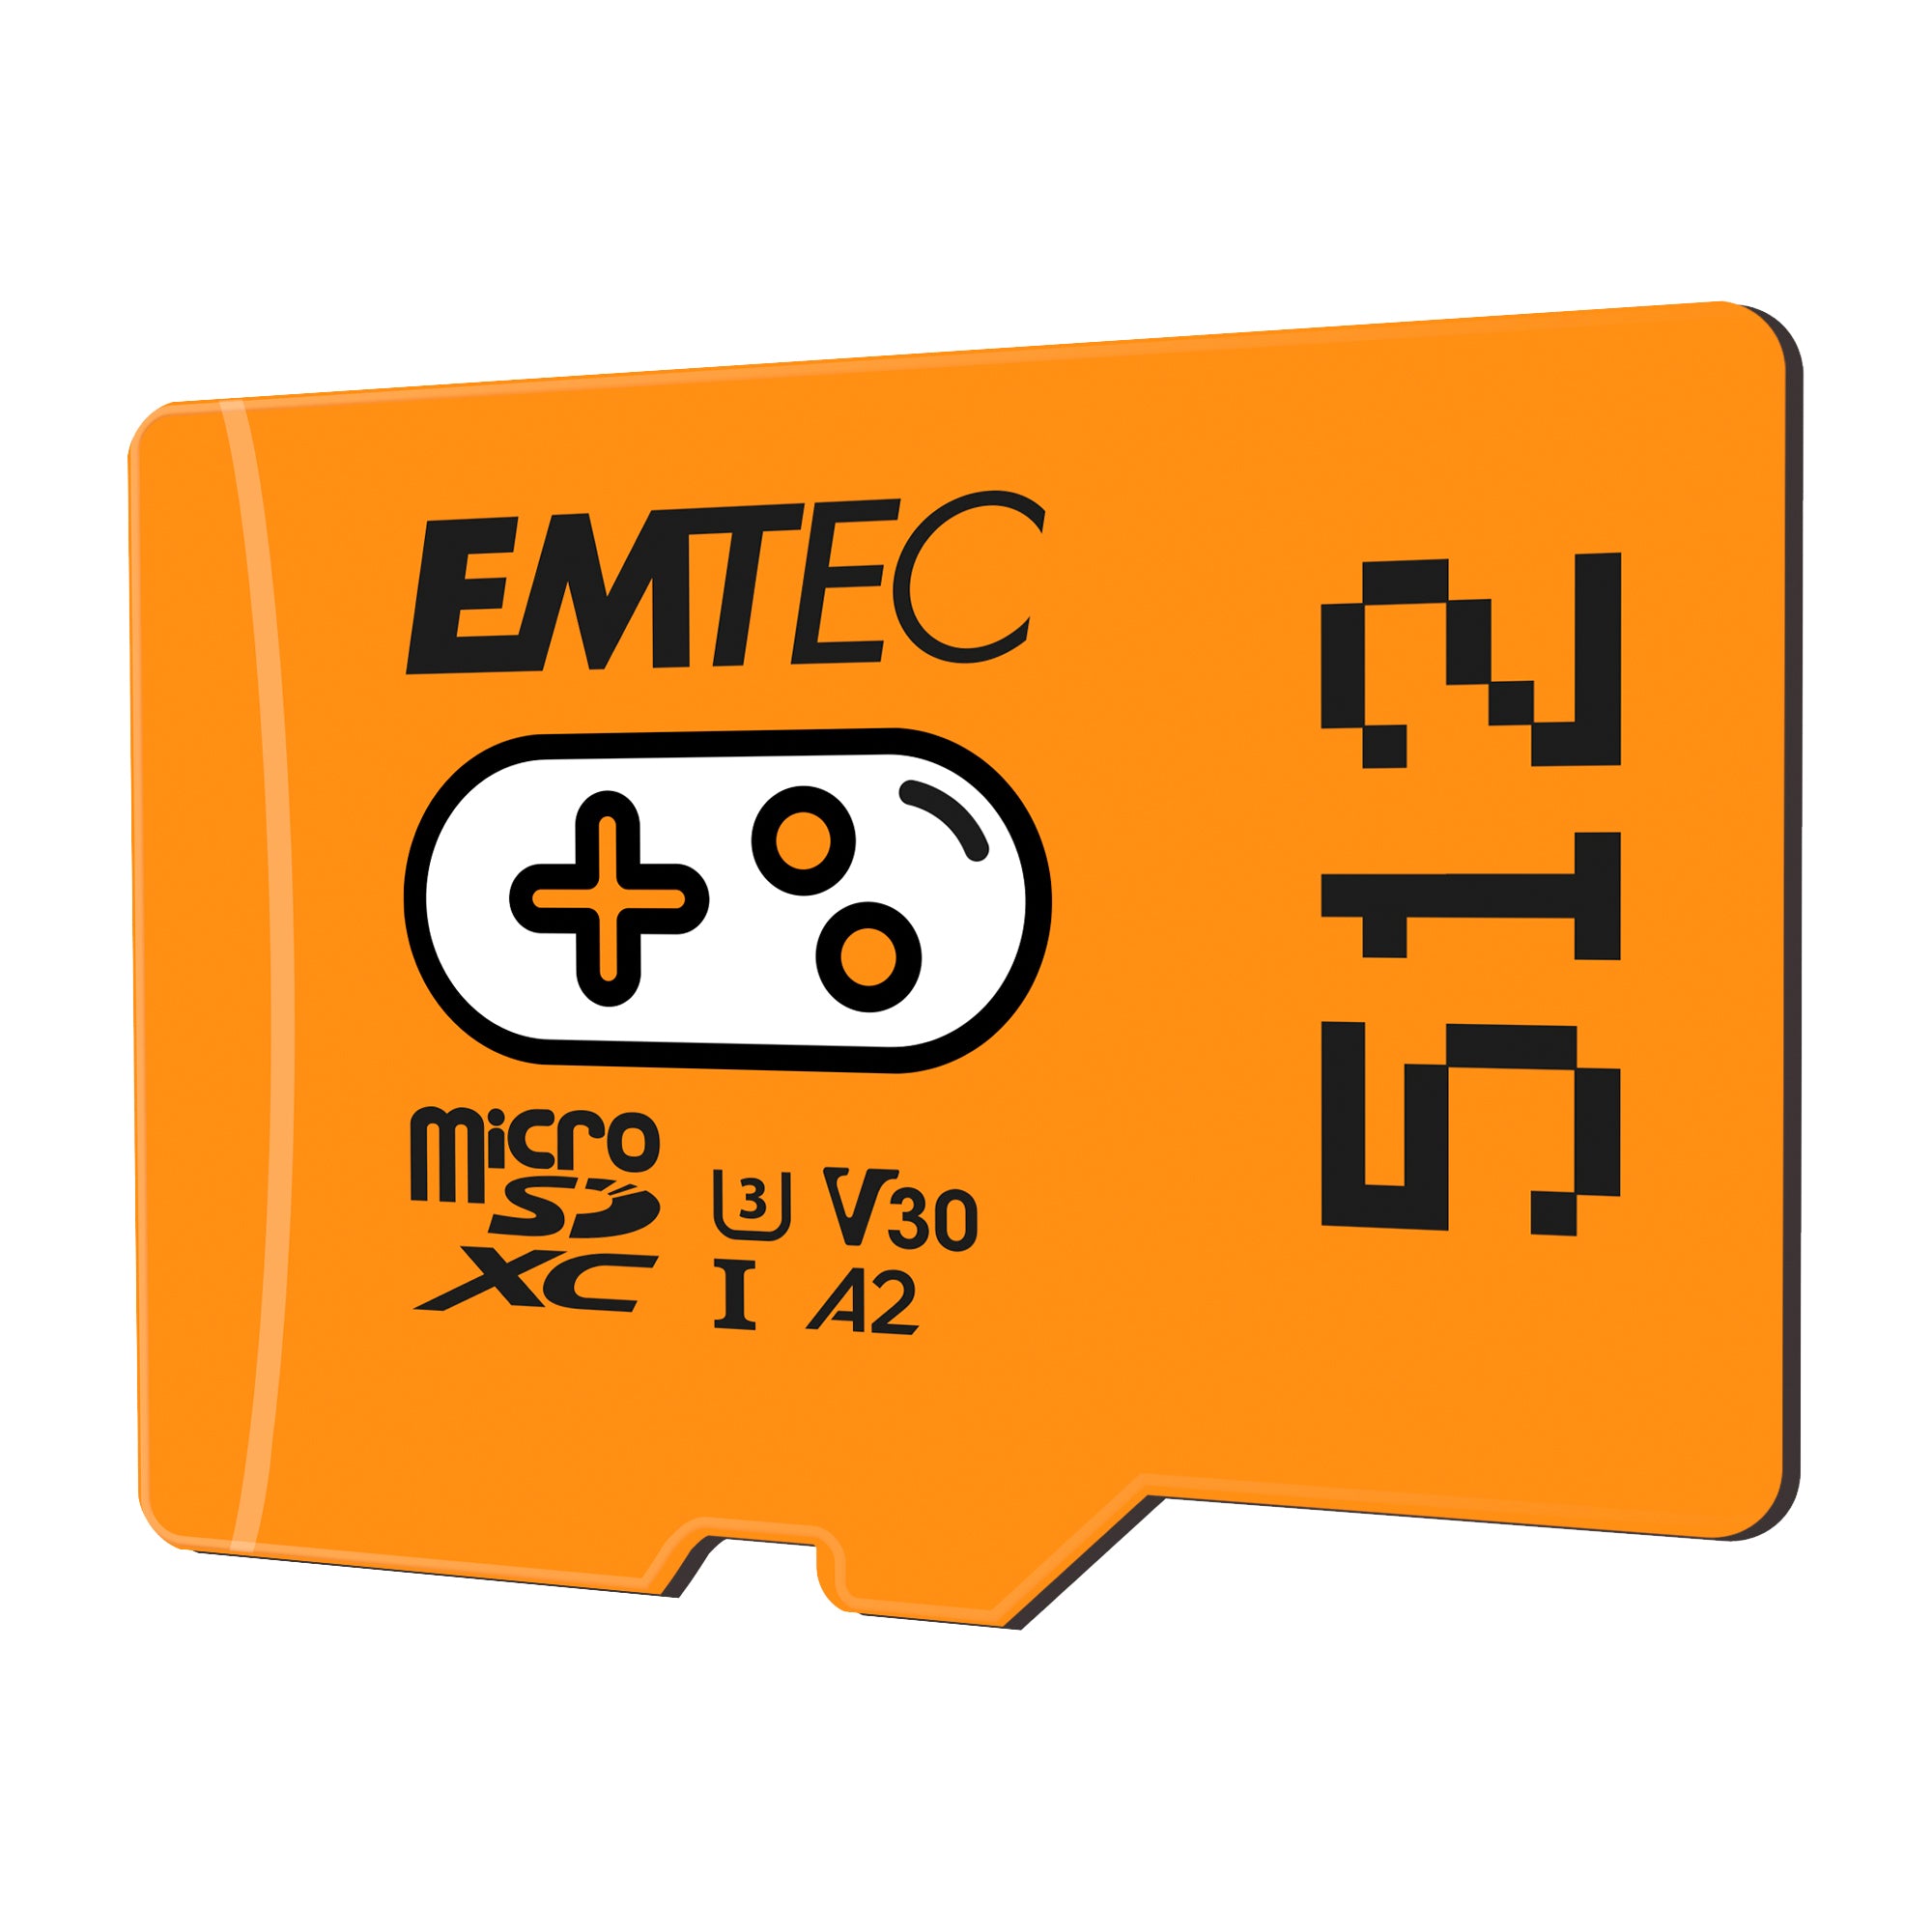 emtec-msd-512gb-uhs-u3-v30-a2-gaming-arancione